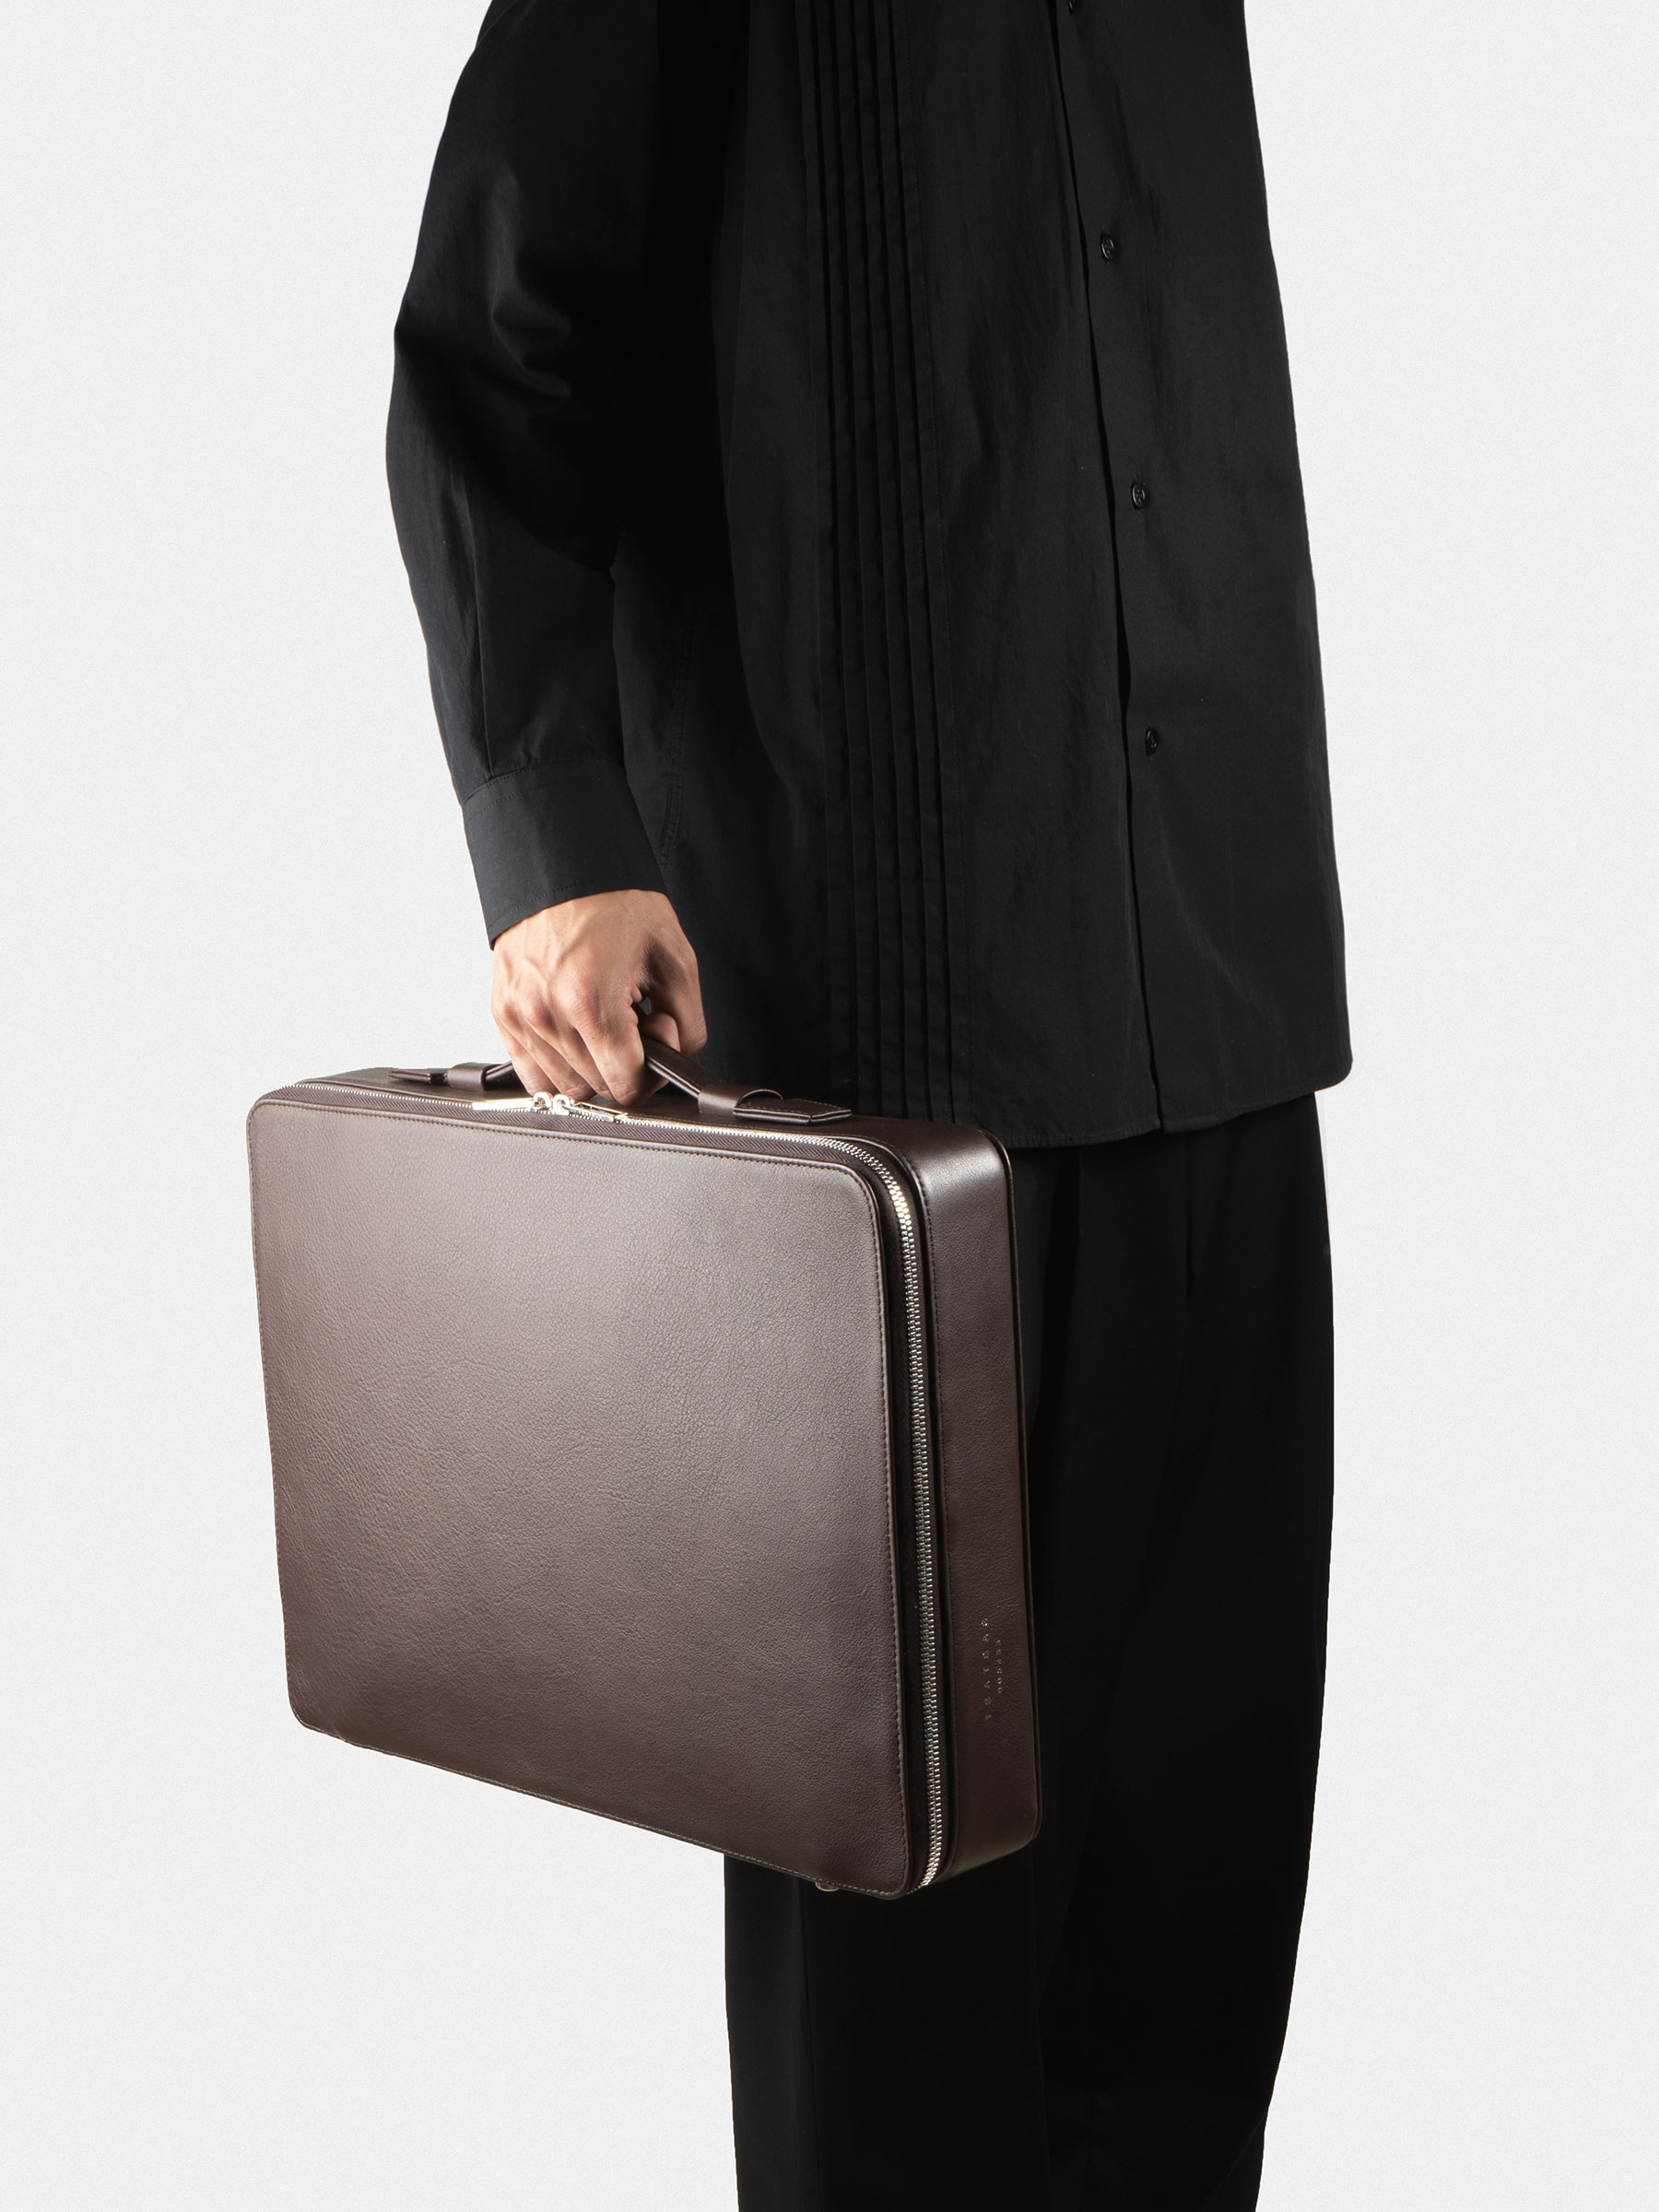 Men Bags Briefcase - Buy Men Bags Briefcase online in India